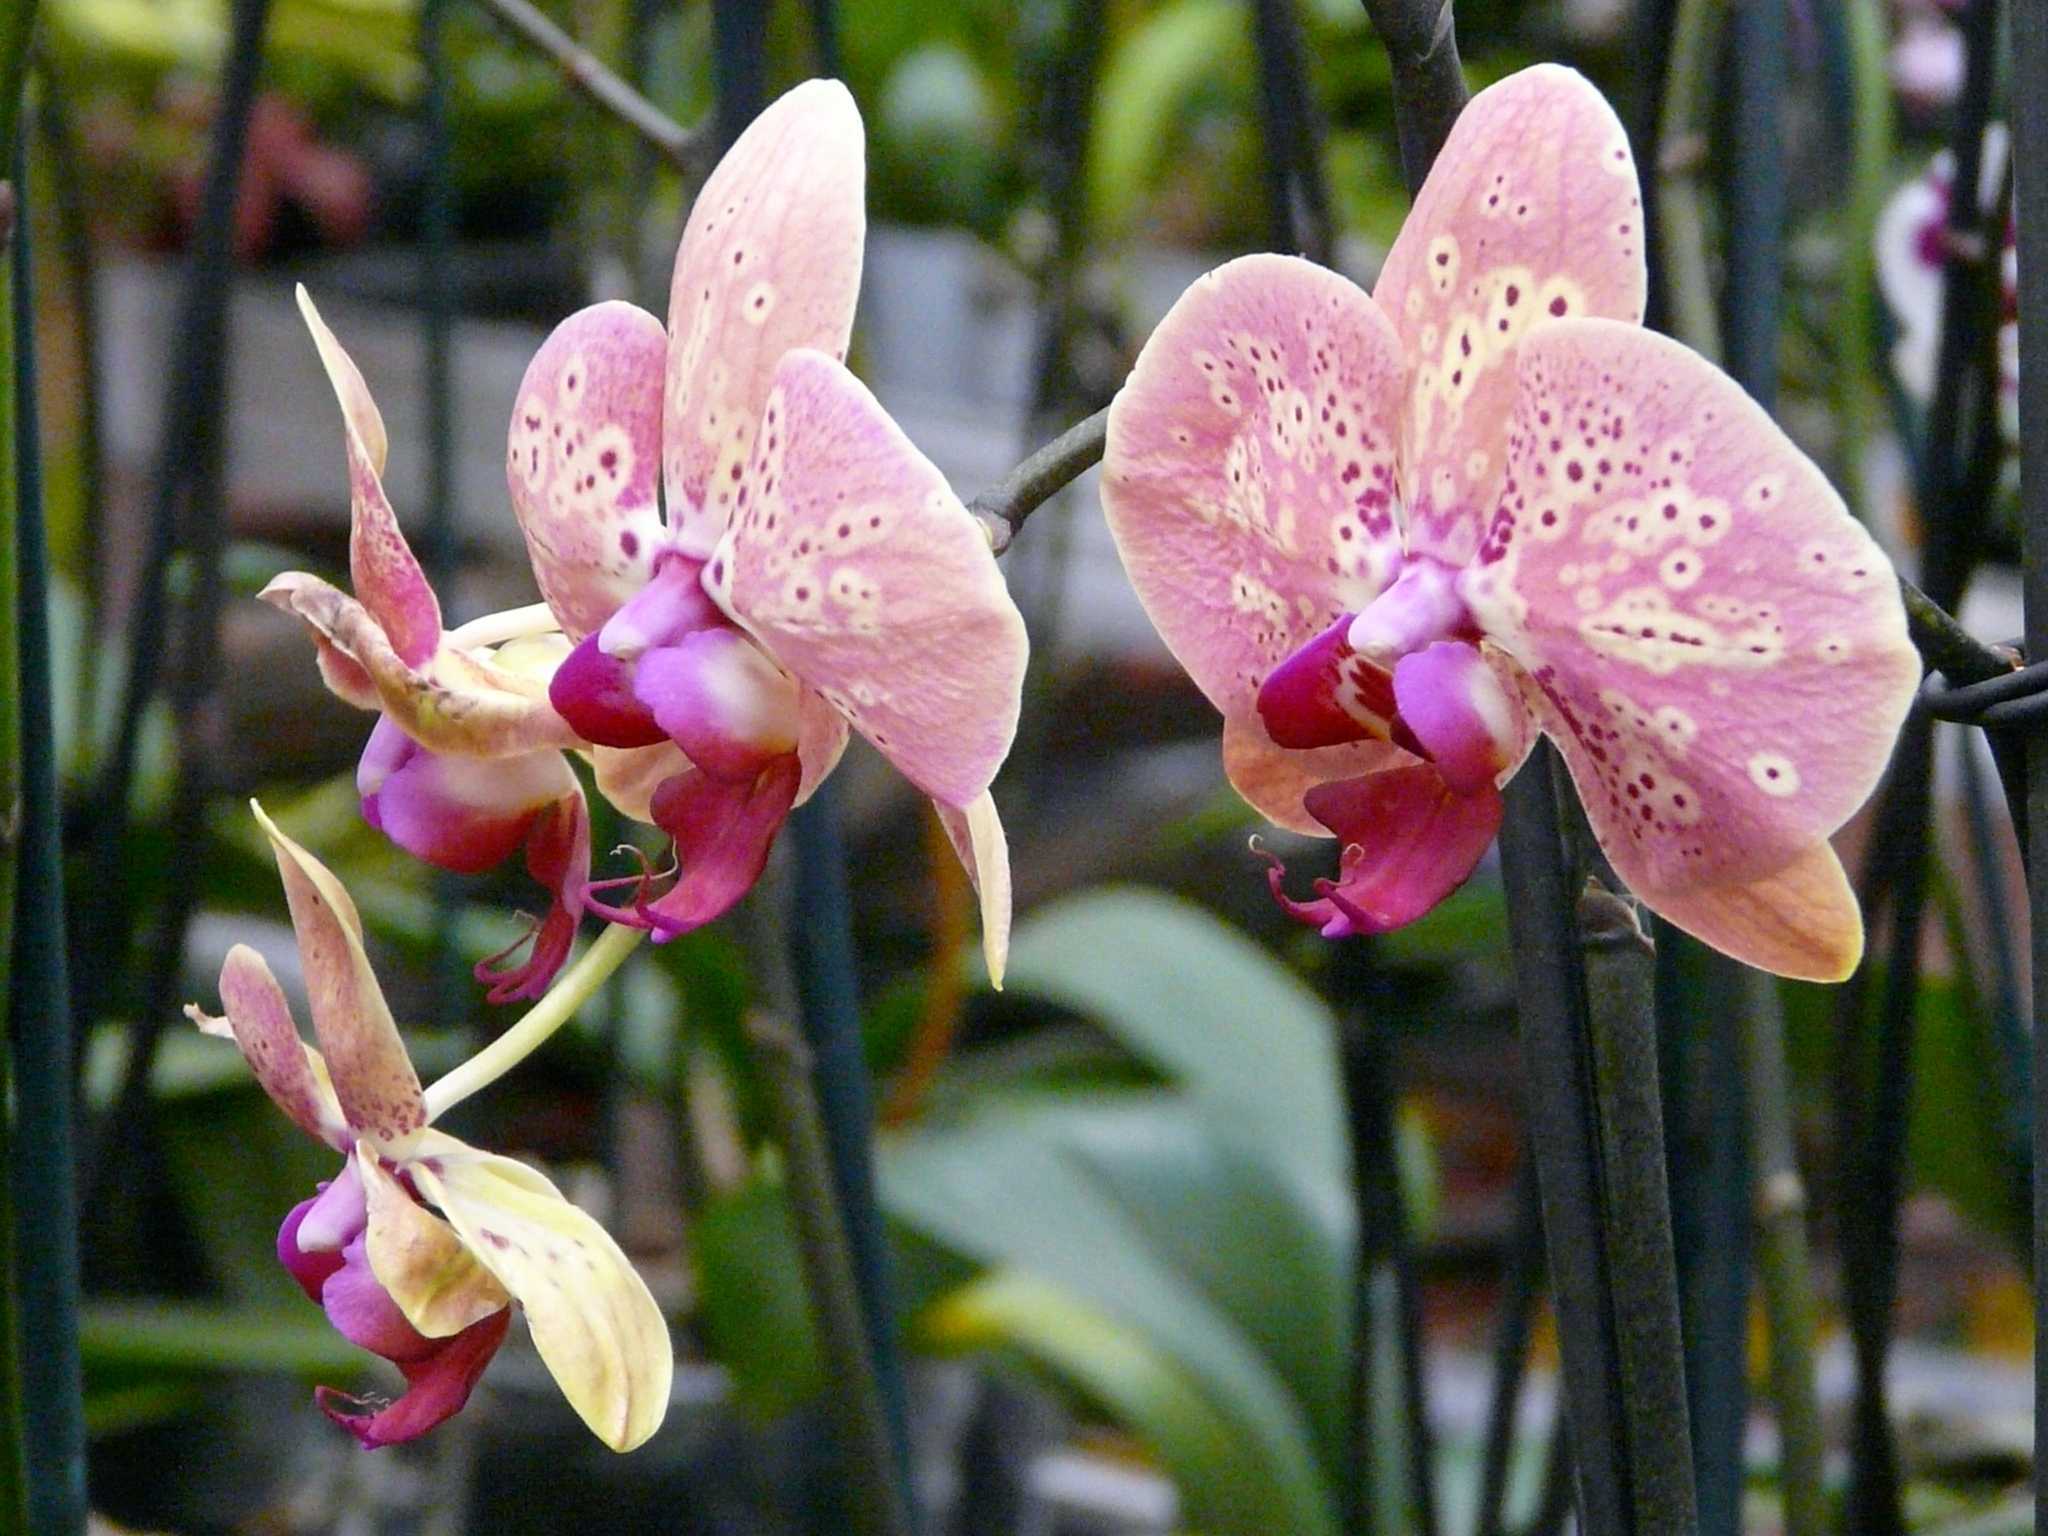 Как вырастить орхидею в домашних условиях - практическое руководство по агротехнике и уходу для новичков: видео о том, можно ли, при каких условиях и как правильно это делать